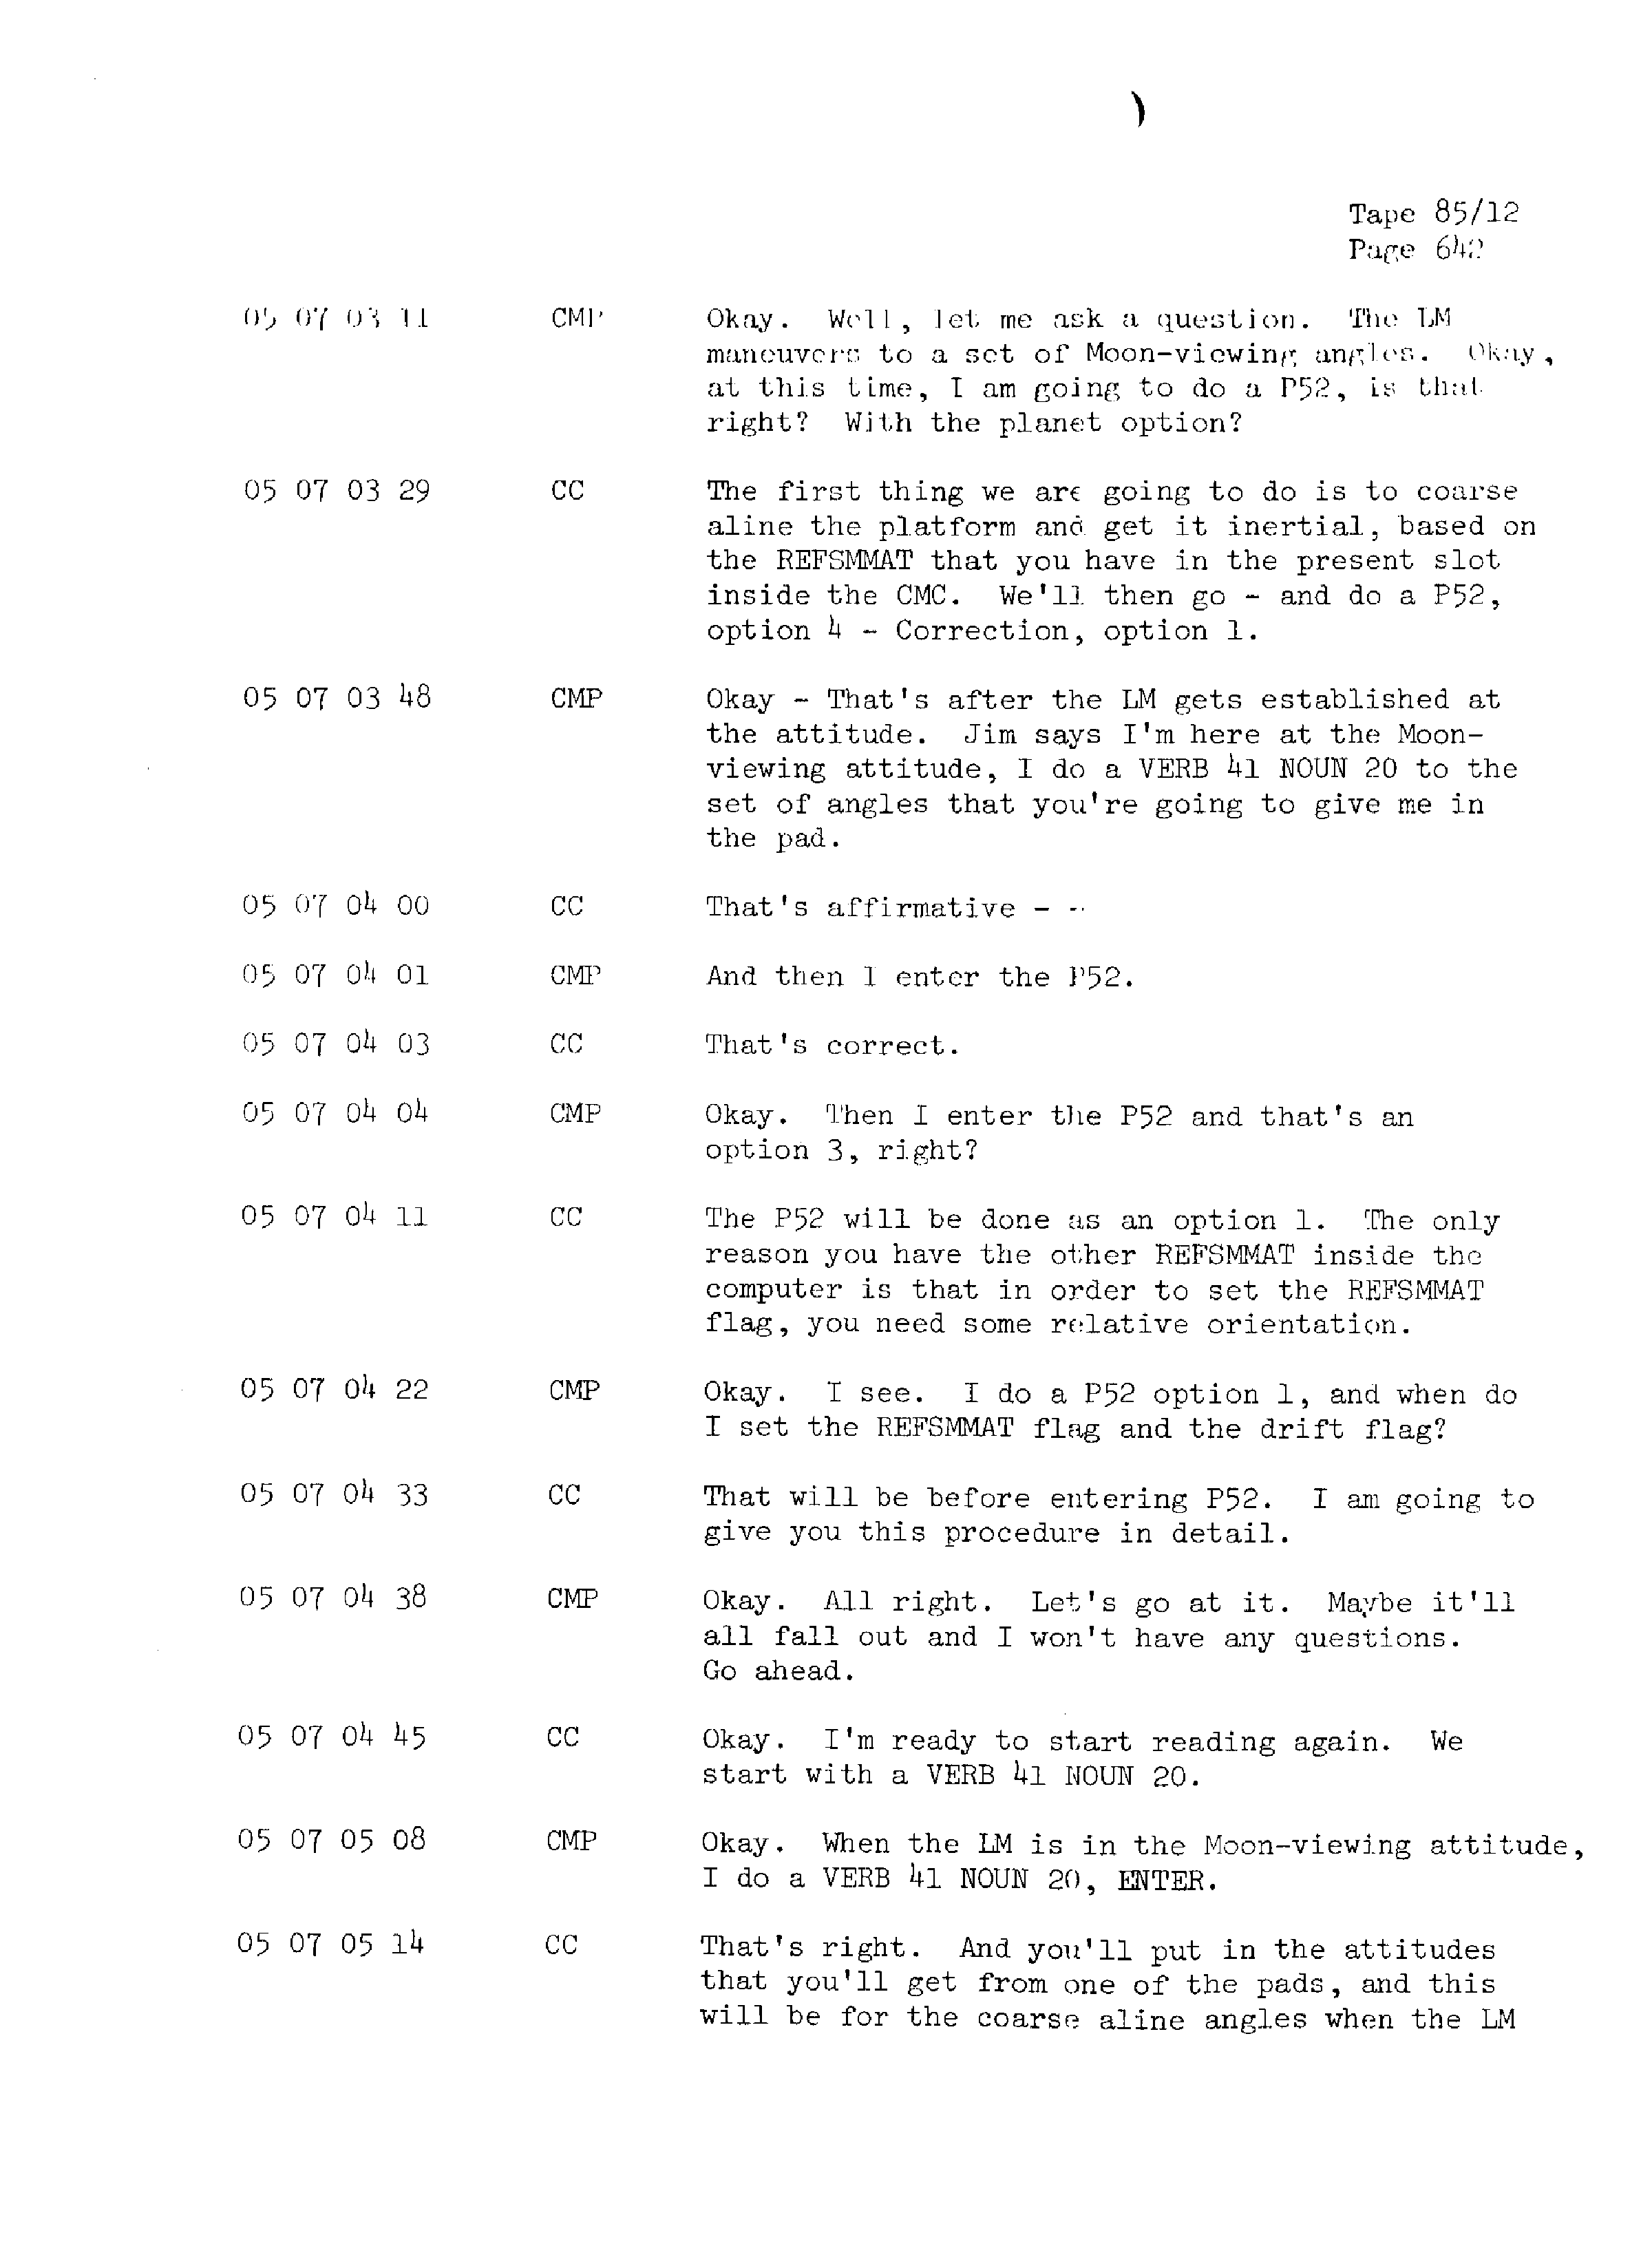 Page 649 of Apollo 13’s original transcript